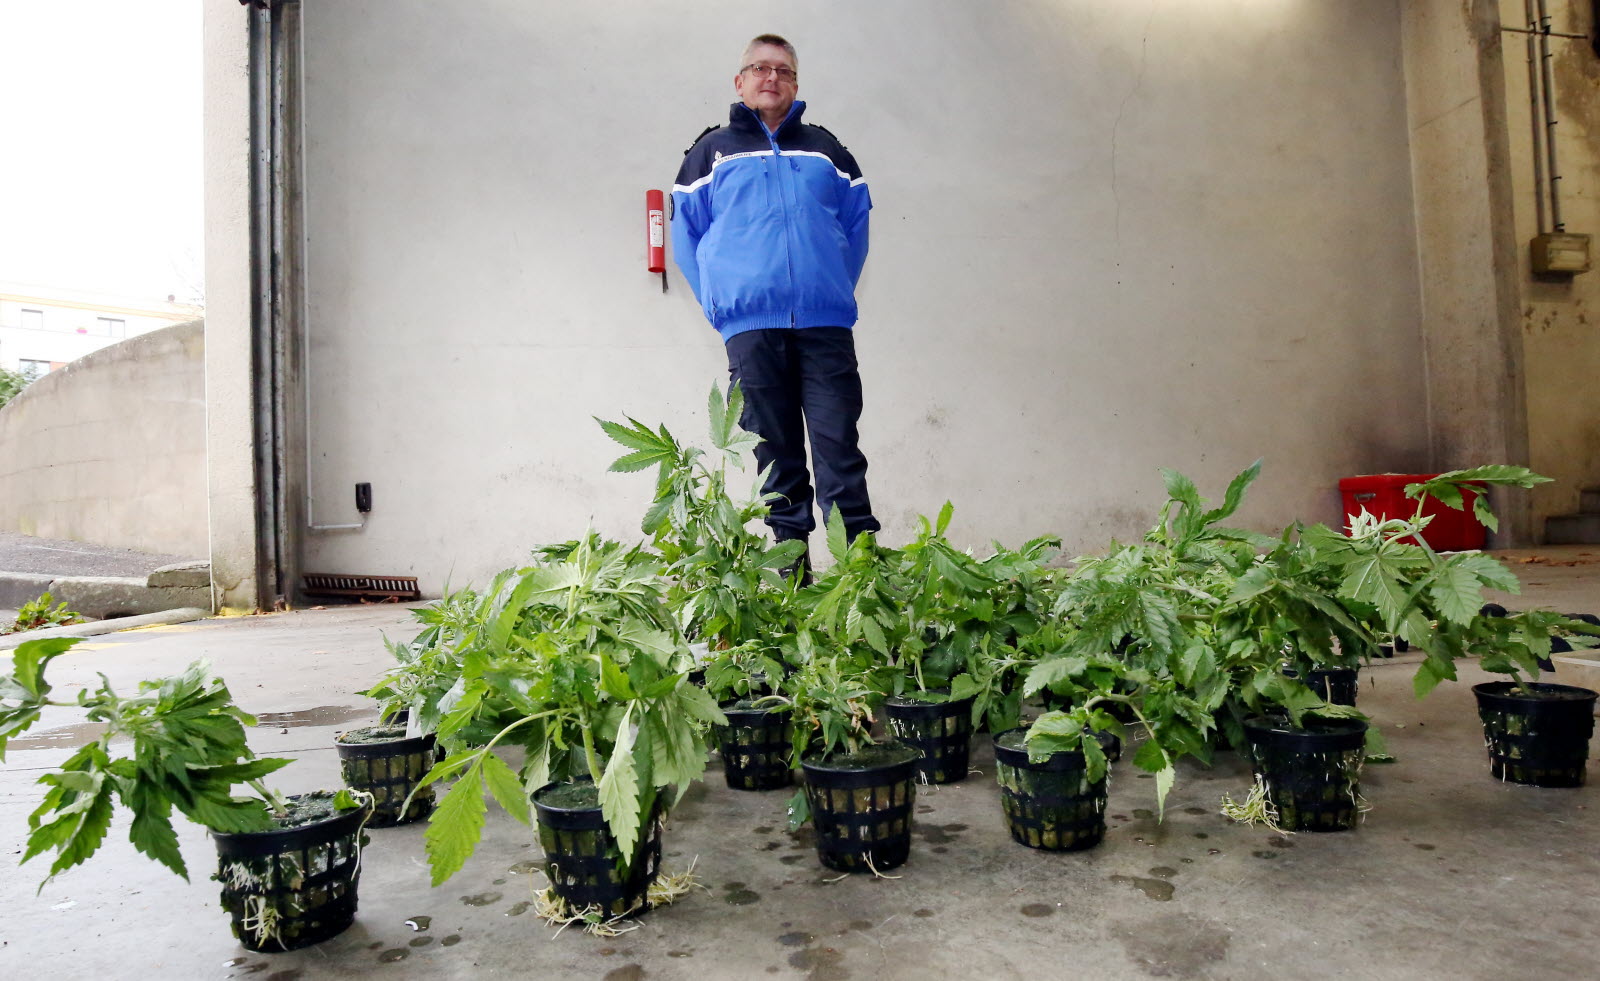 le commandant pascal niggemann patron de la compagnie de gendarmerie de briey confirme la saisie de 250 plants entre autre photo fred lecocq 1448463724